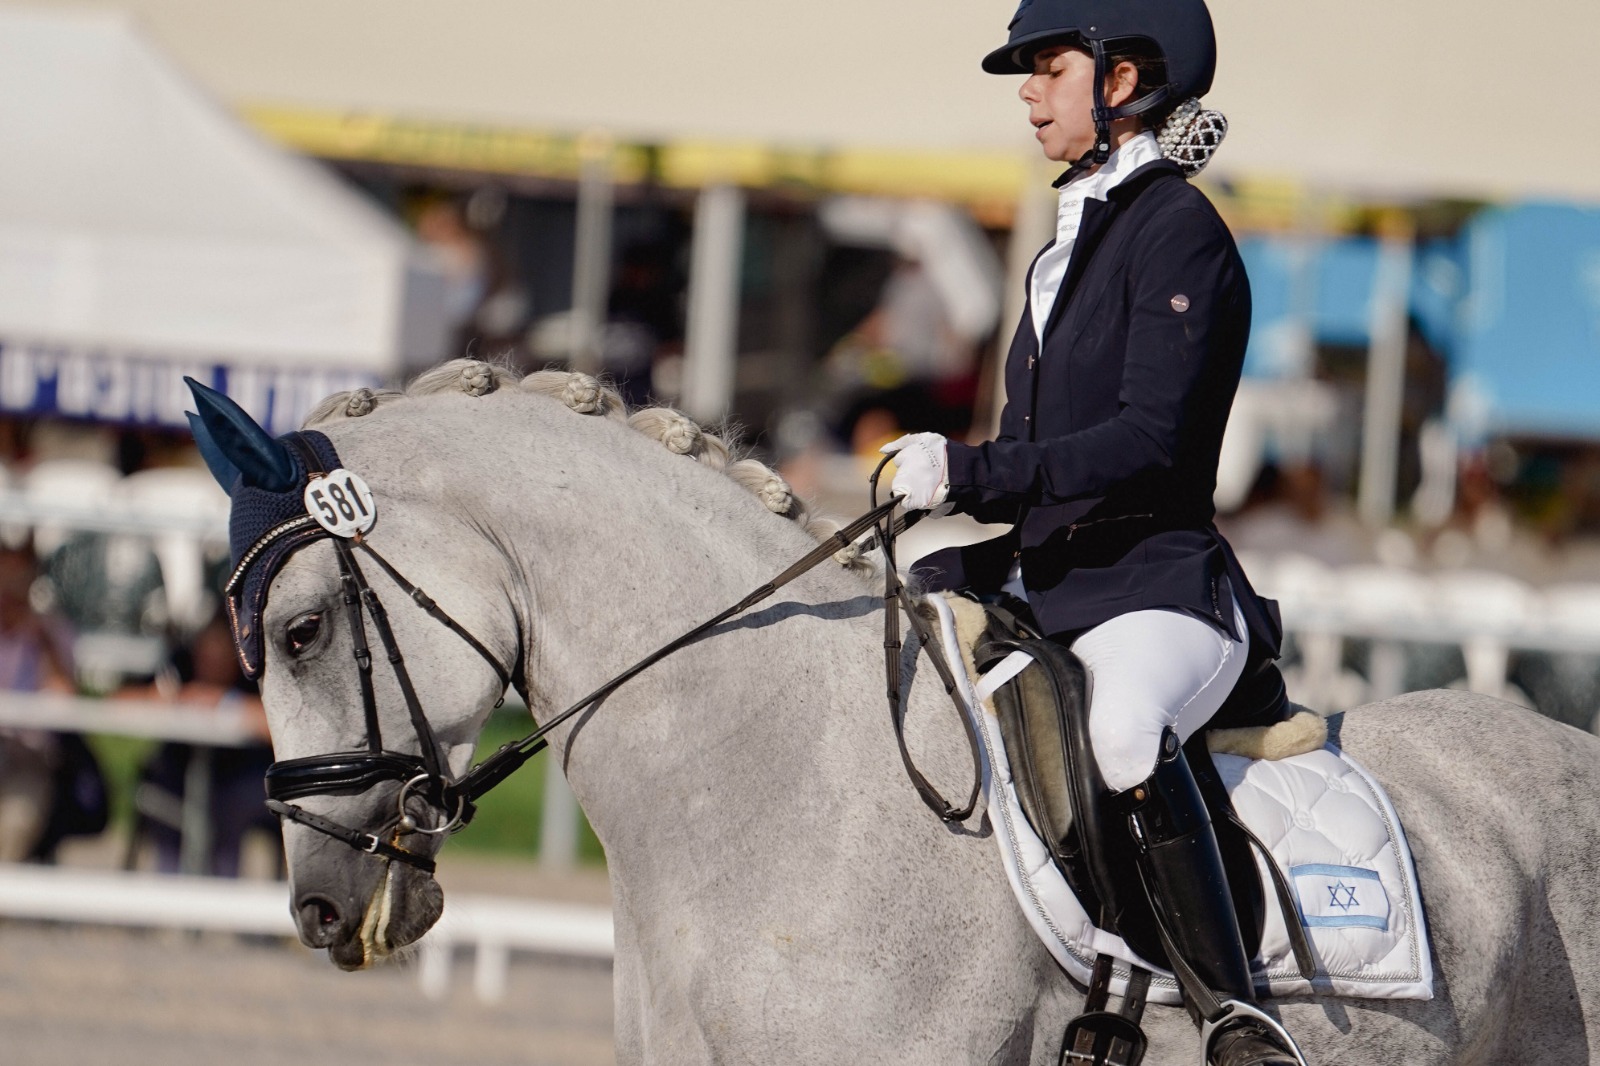 The Games - Equestrian, Finals, Sarona, July 21st Equestrian